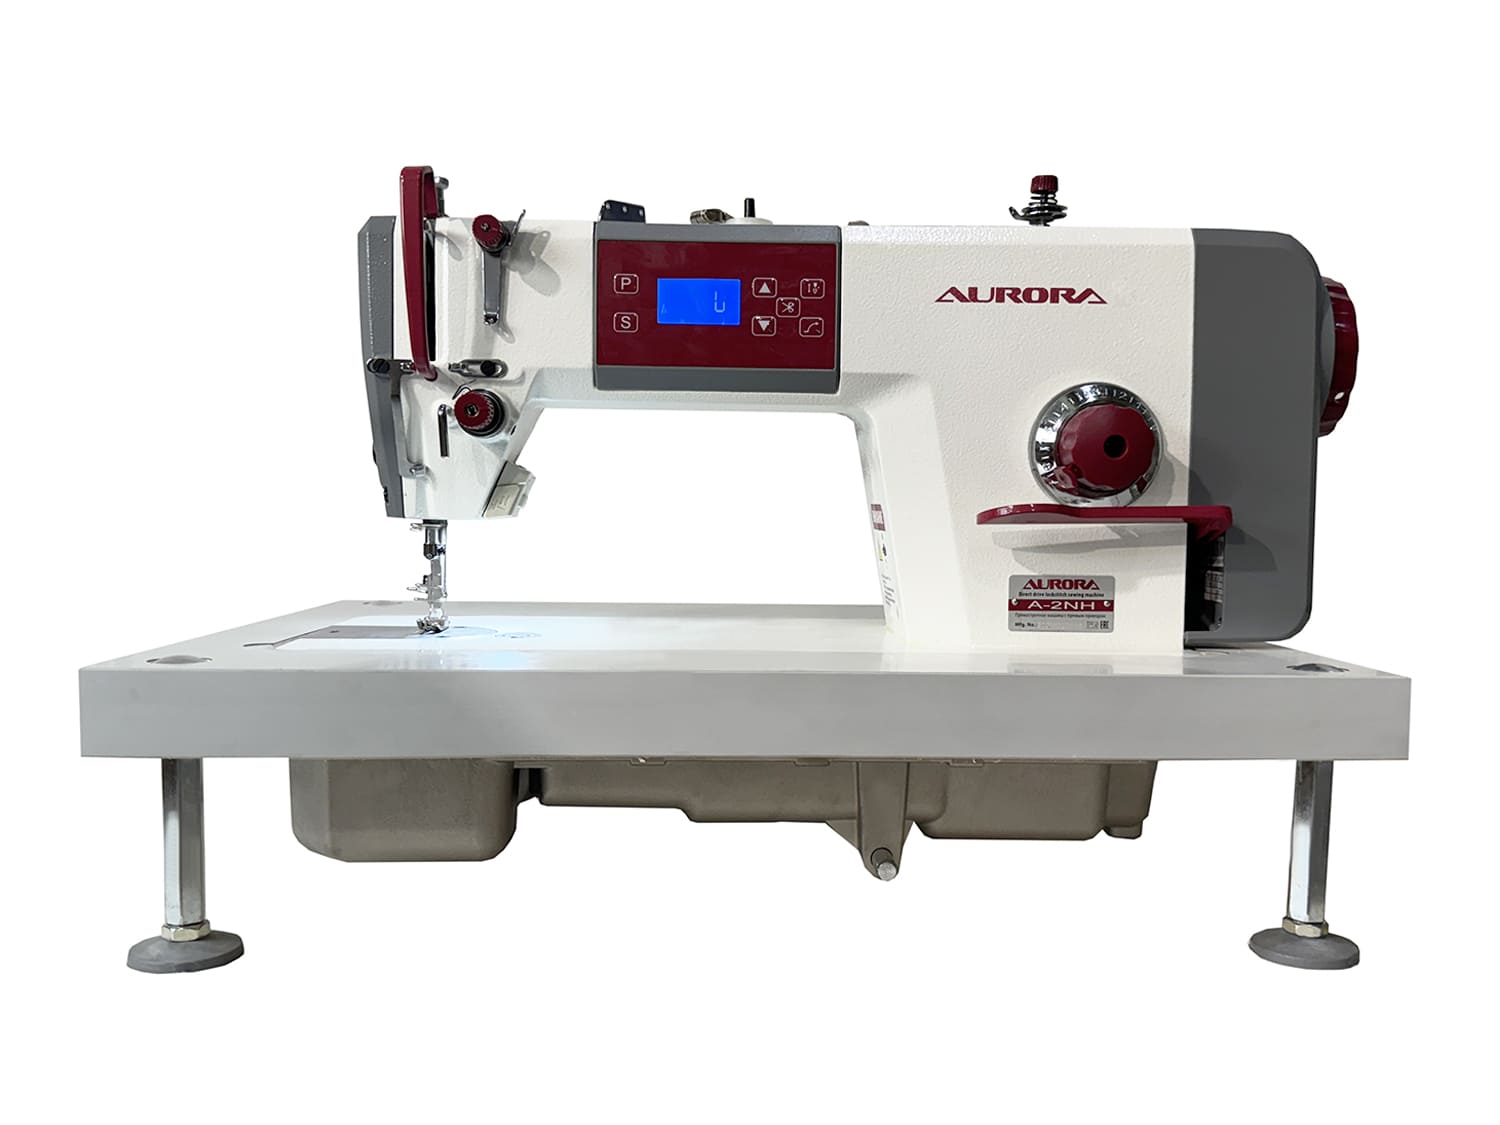 Настольная прямострочная промышленная швейная машина Aurora A-2NH Home